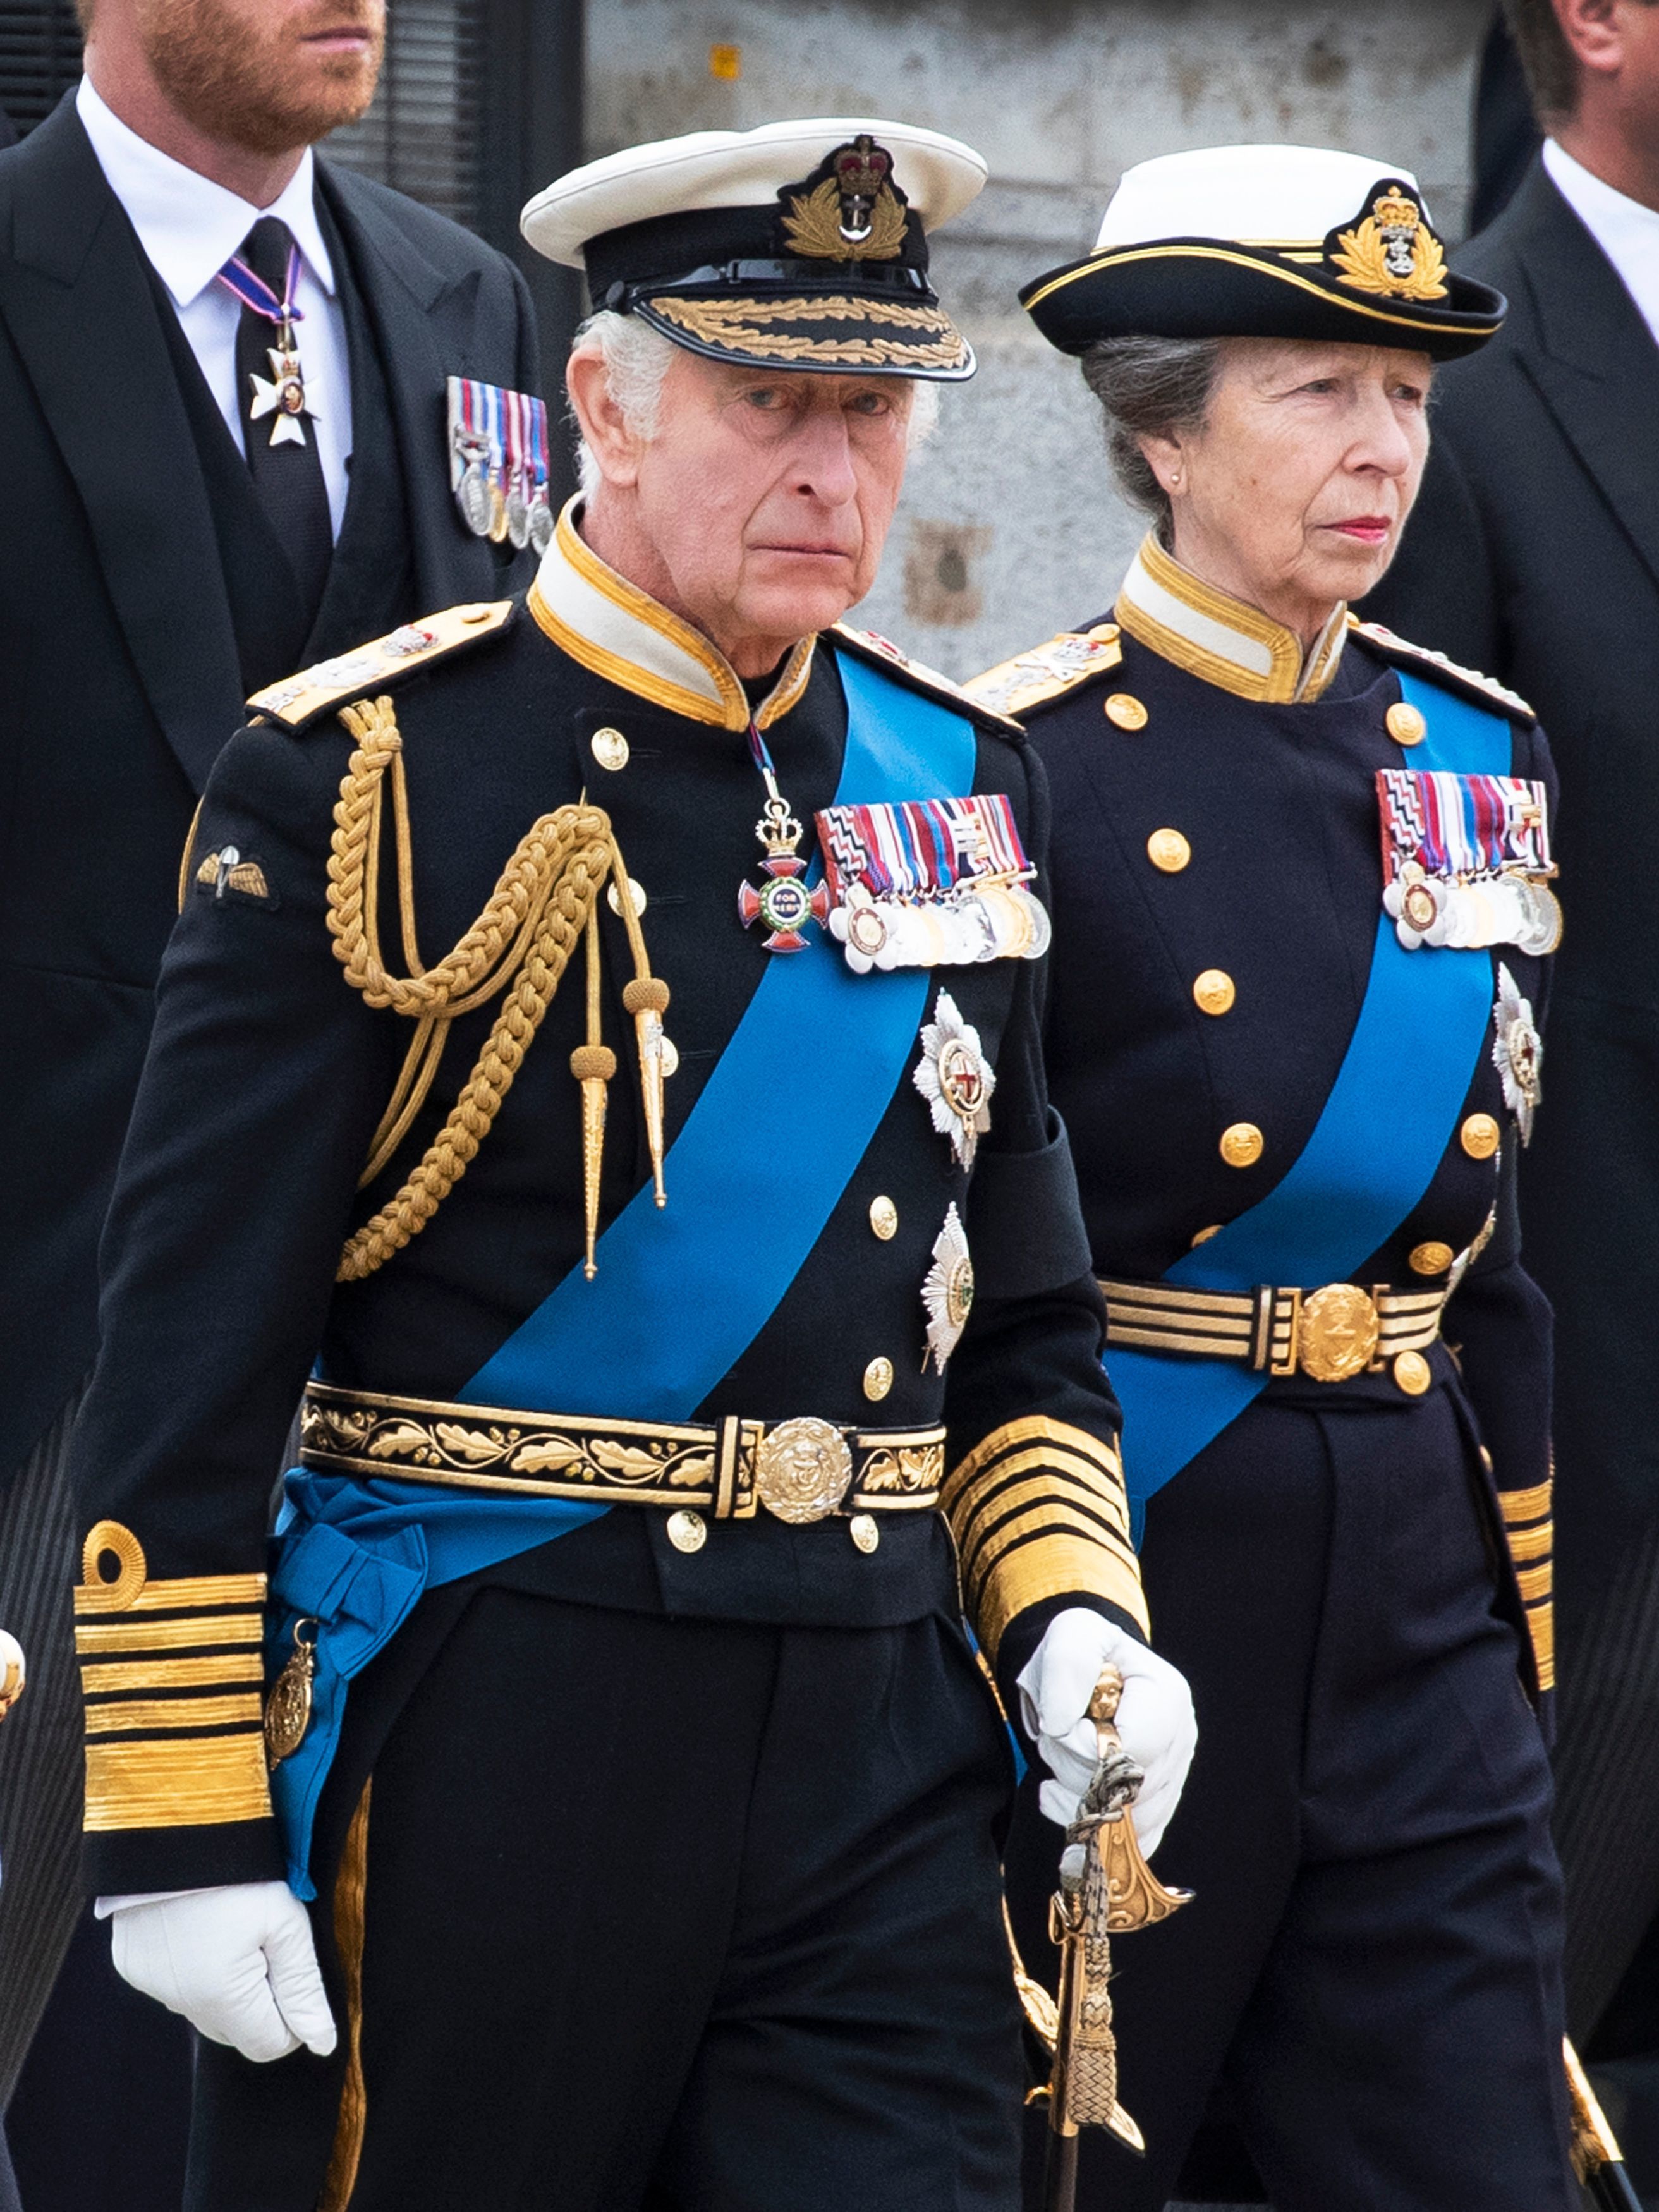 Claves de la coronacin de Carlos III: la princesa Ana, su papel crucial vestida con uniforme militar y a caballo y otros detalles de etiqueta